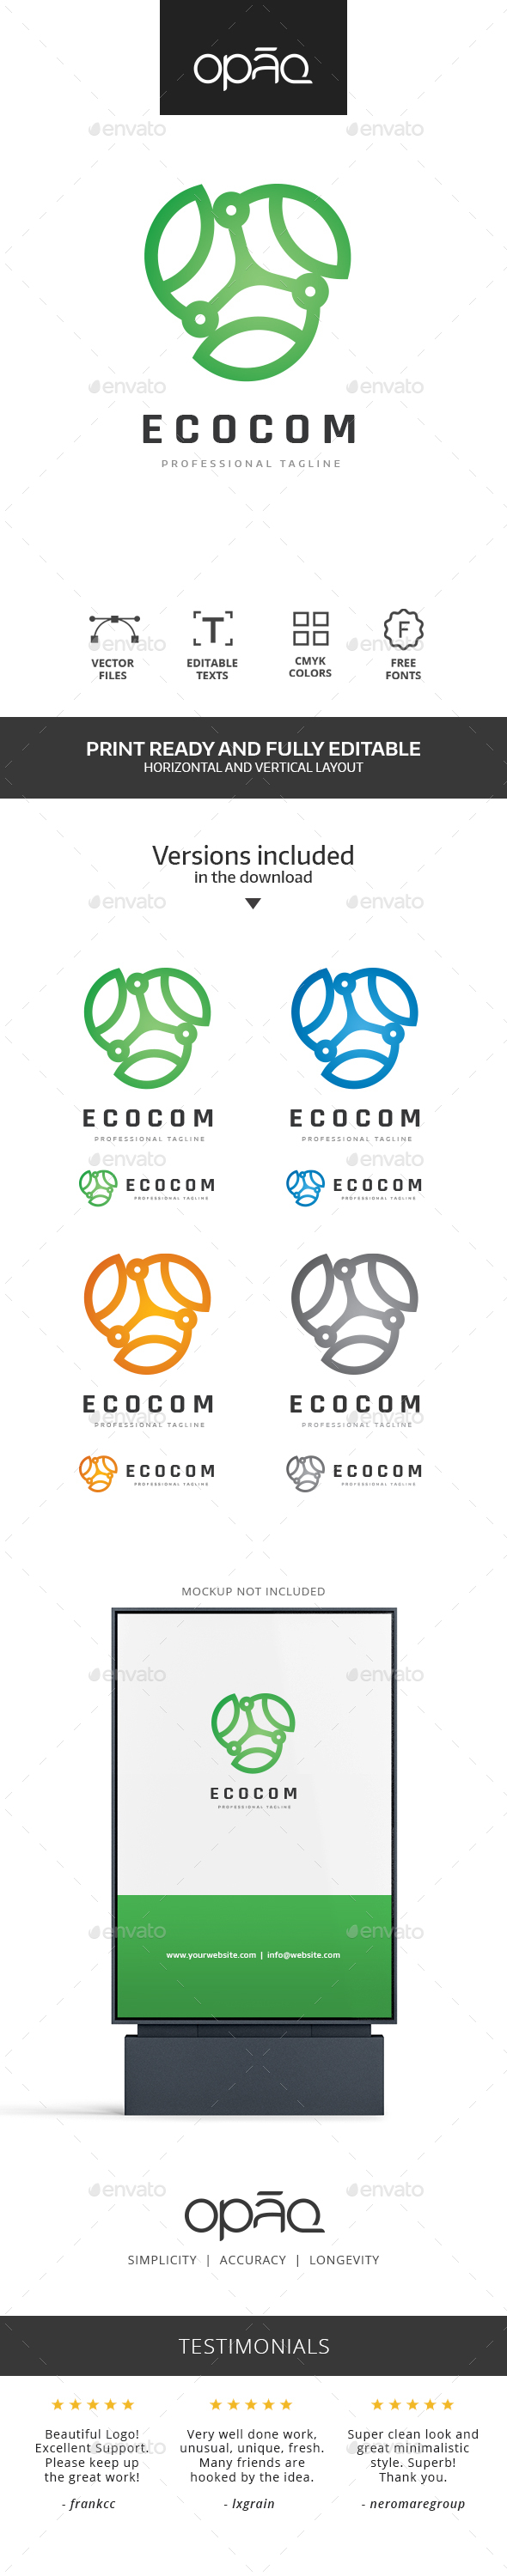 Ecologic Technologies Logo